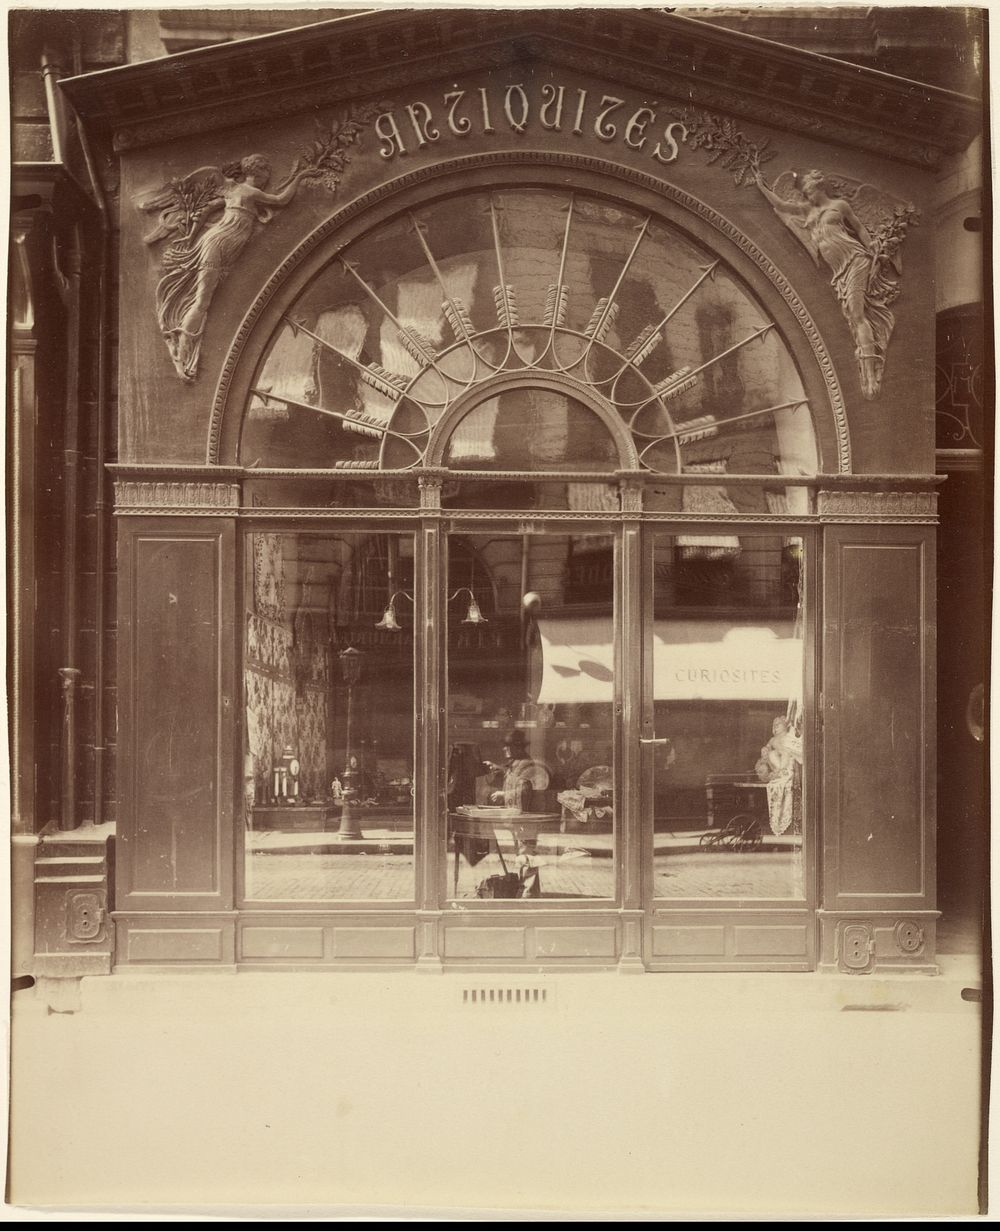 Vieille Empire, 21 Faubourg St. Honoré (Antique Store, rue du Faubourg-Saint-Honoré) by Eugène Atget